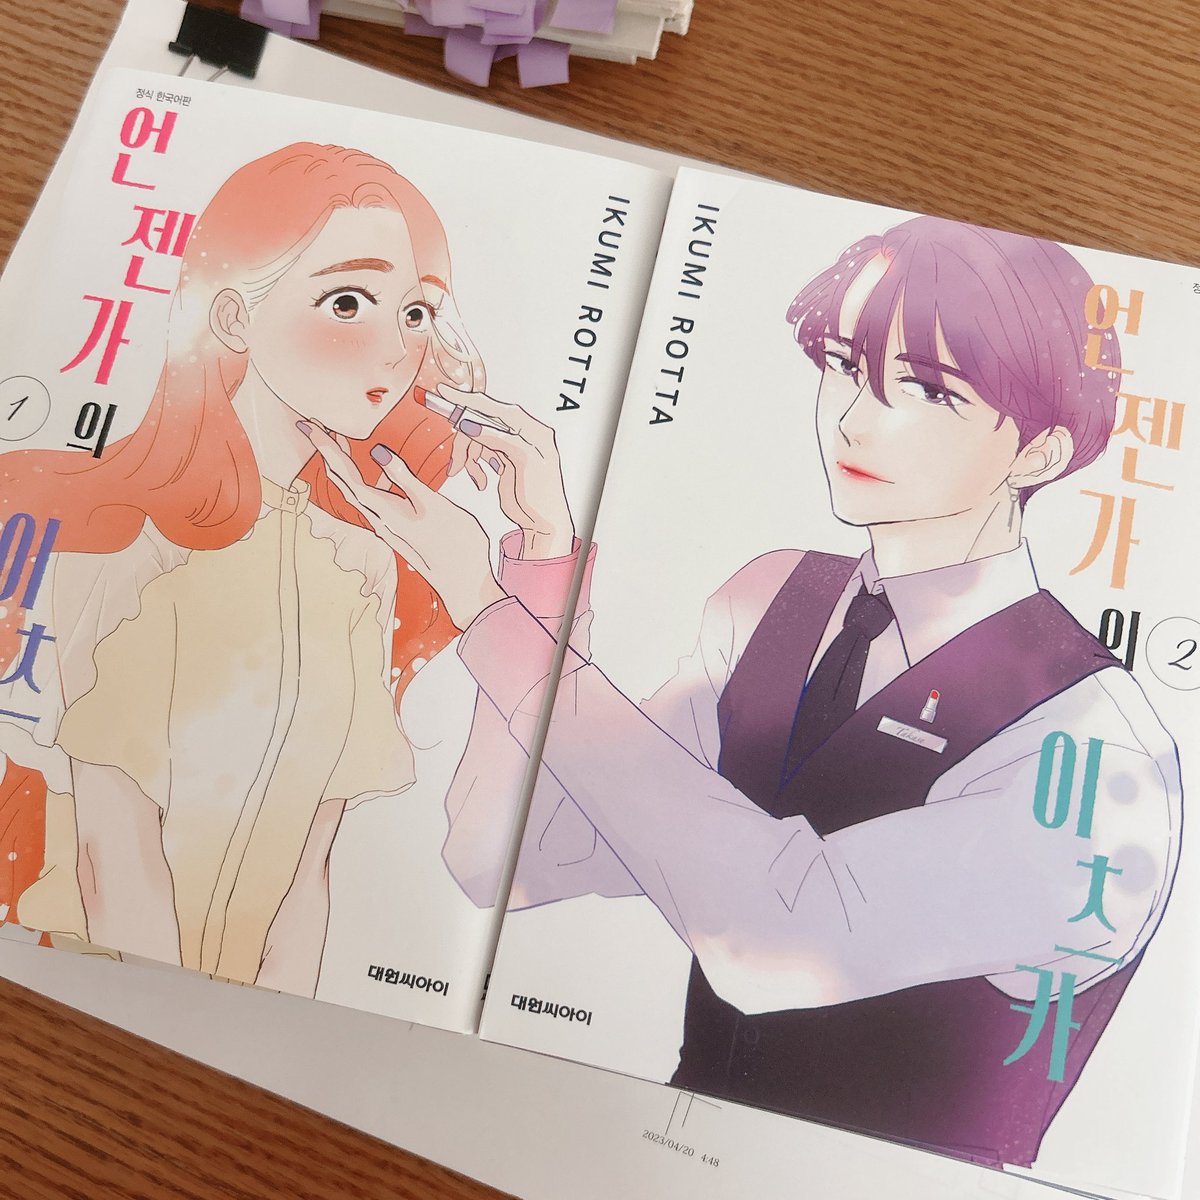 担当さんより韓国語翻訳版『いつかのいつか』送っていただいてさっき開封して中身見てました。嬉しいなあ。じーんときてしまった。この漫画を好きになってくれる人に届くといいな🥲